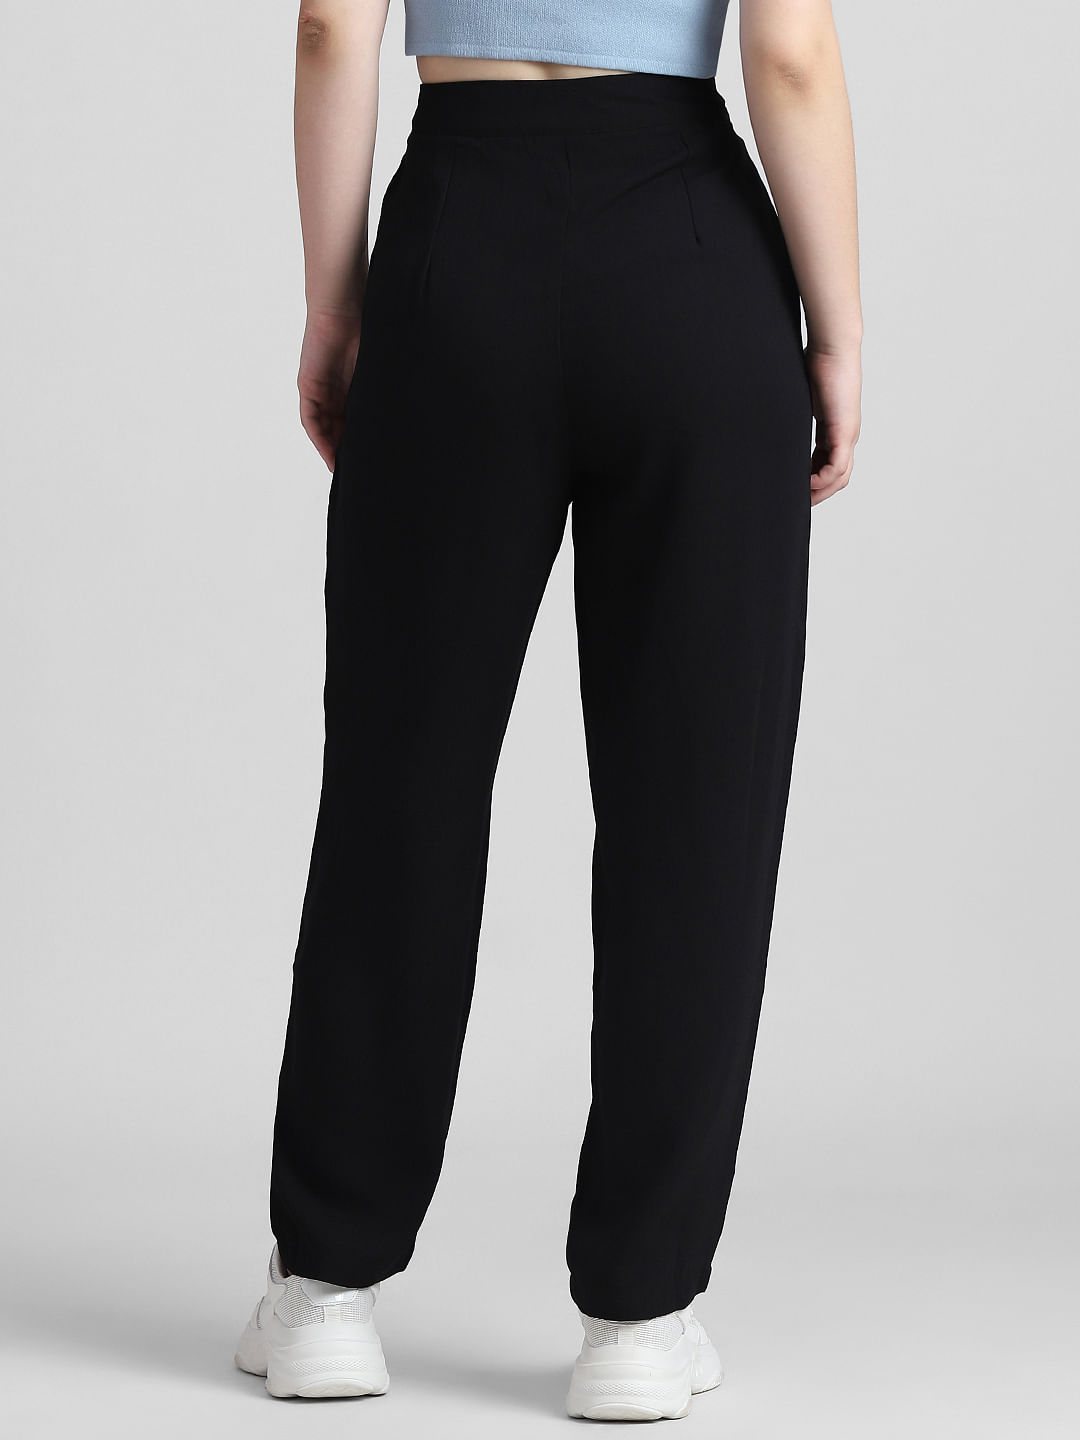 High-Waist Pursuit Trouser - Black | Pants for women, High waisted trousers,  Best travel pants